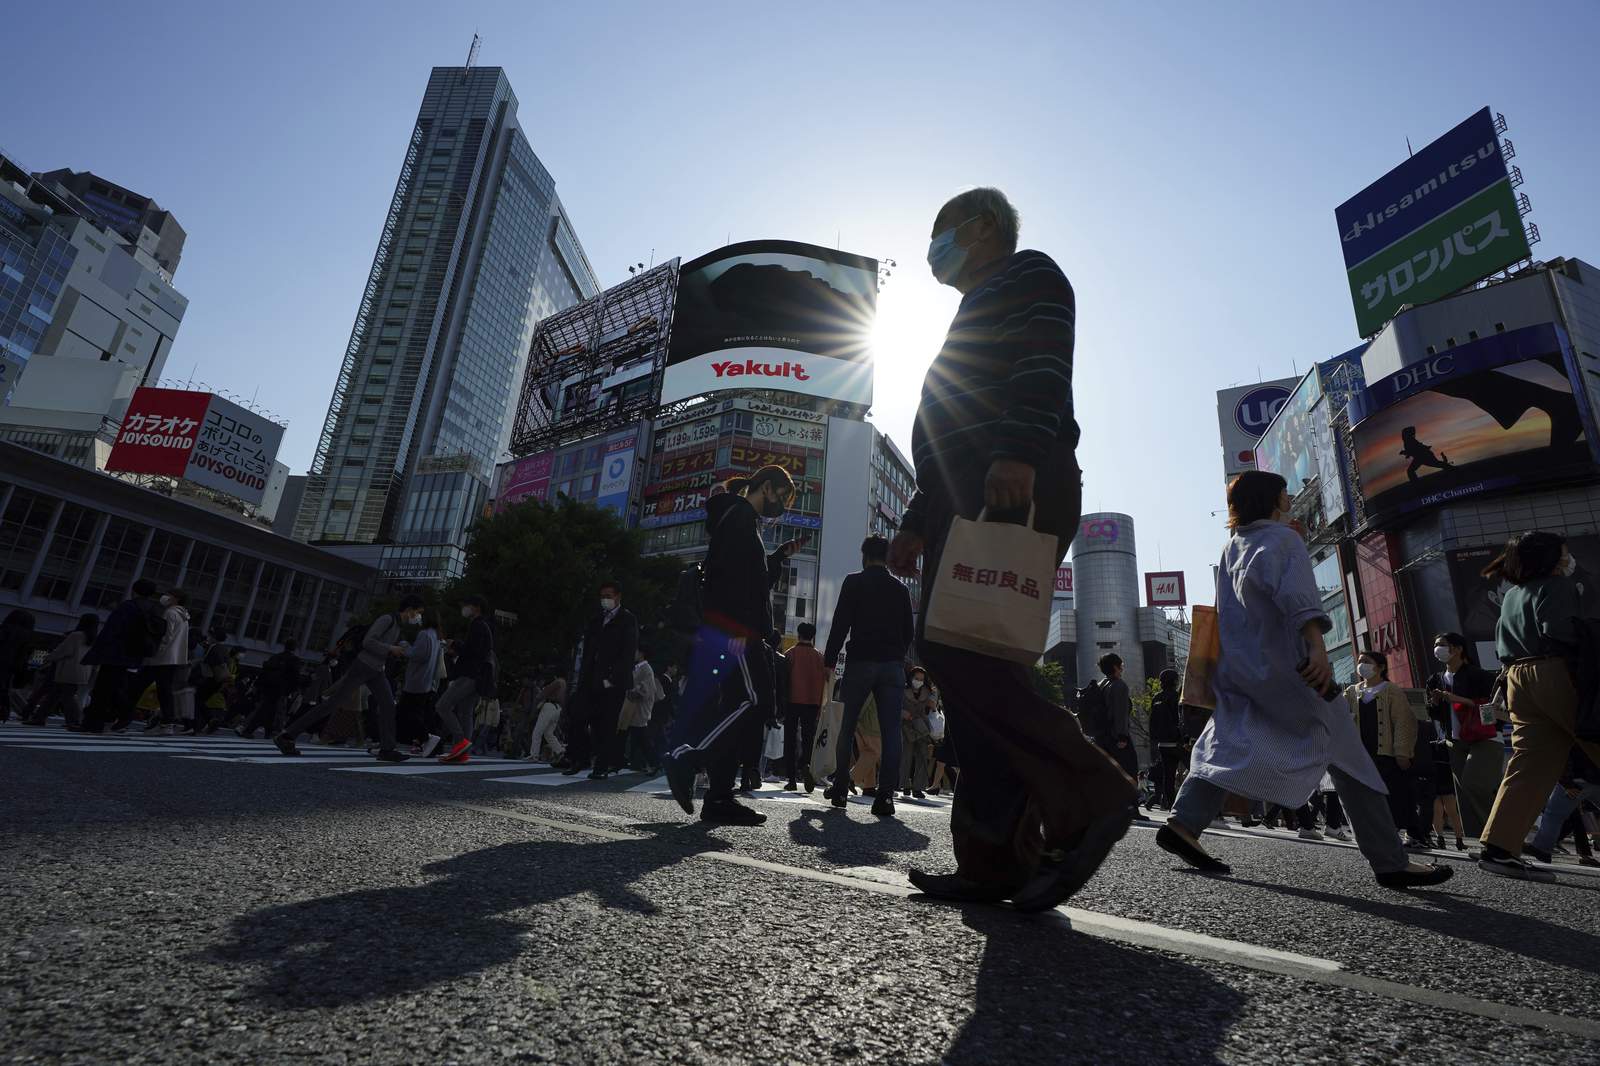 Japan to raise virus steps in Tokyo, 3 months ahead of Games